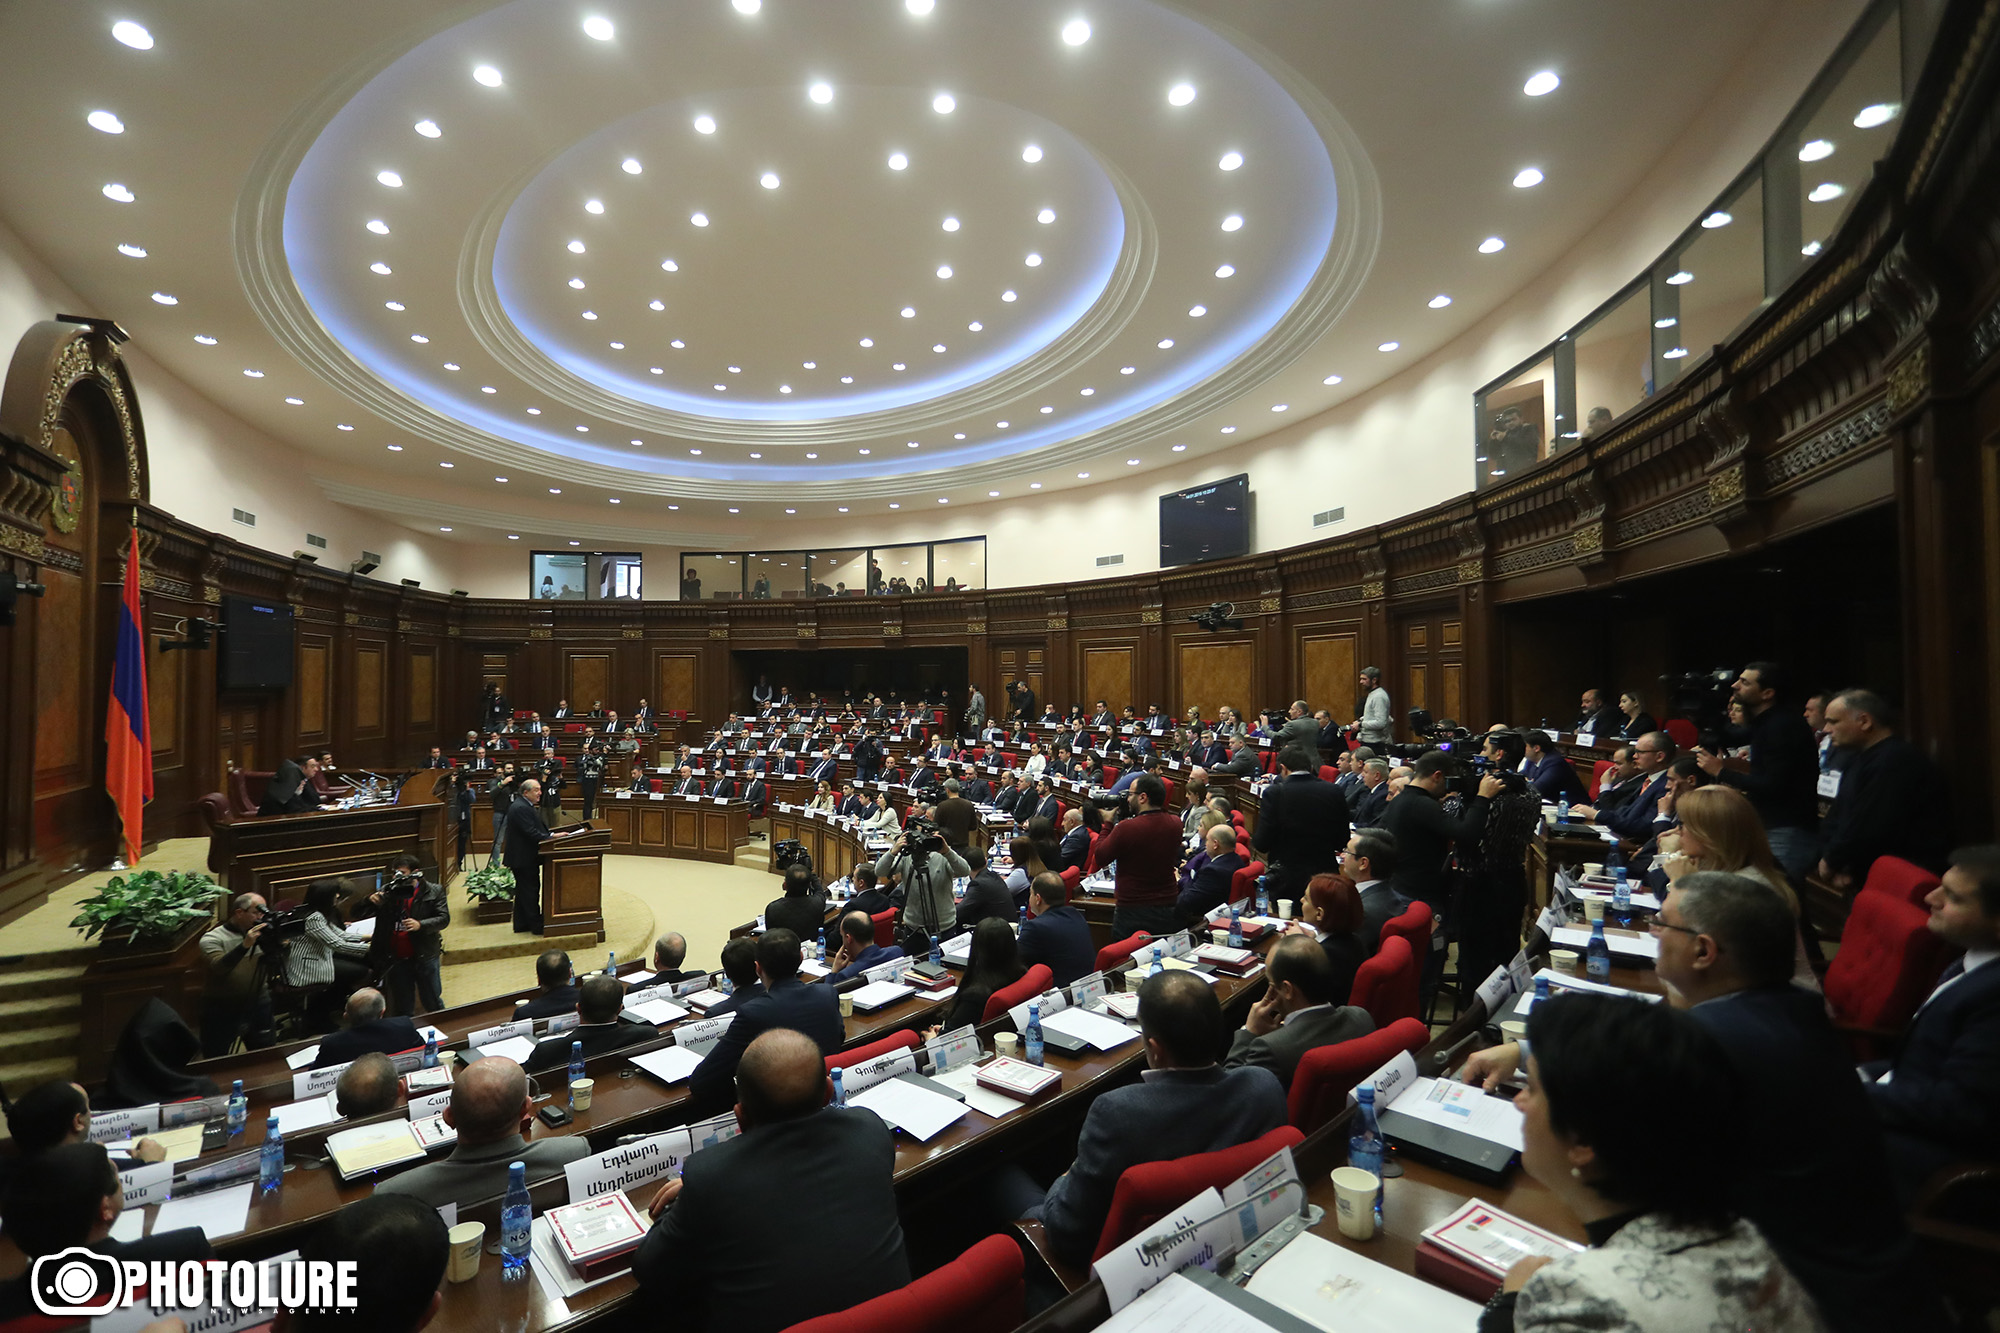 Будни нового парламента Армении: словесные перепалки и 